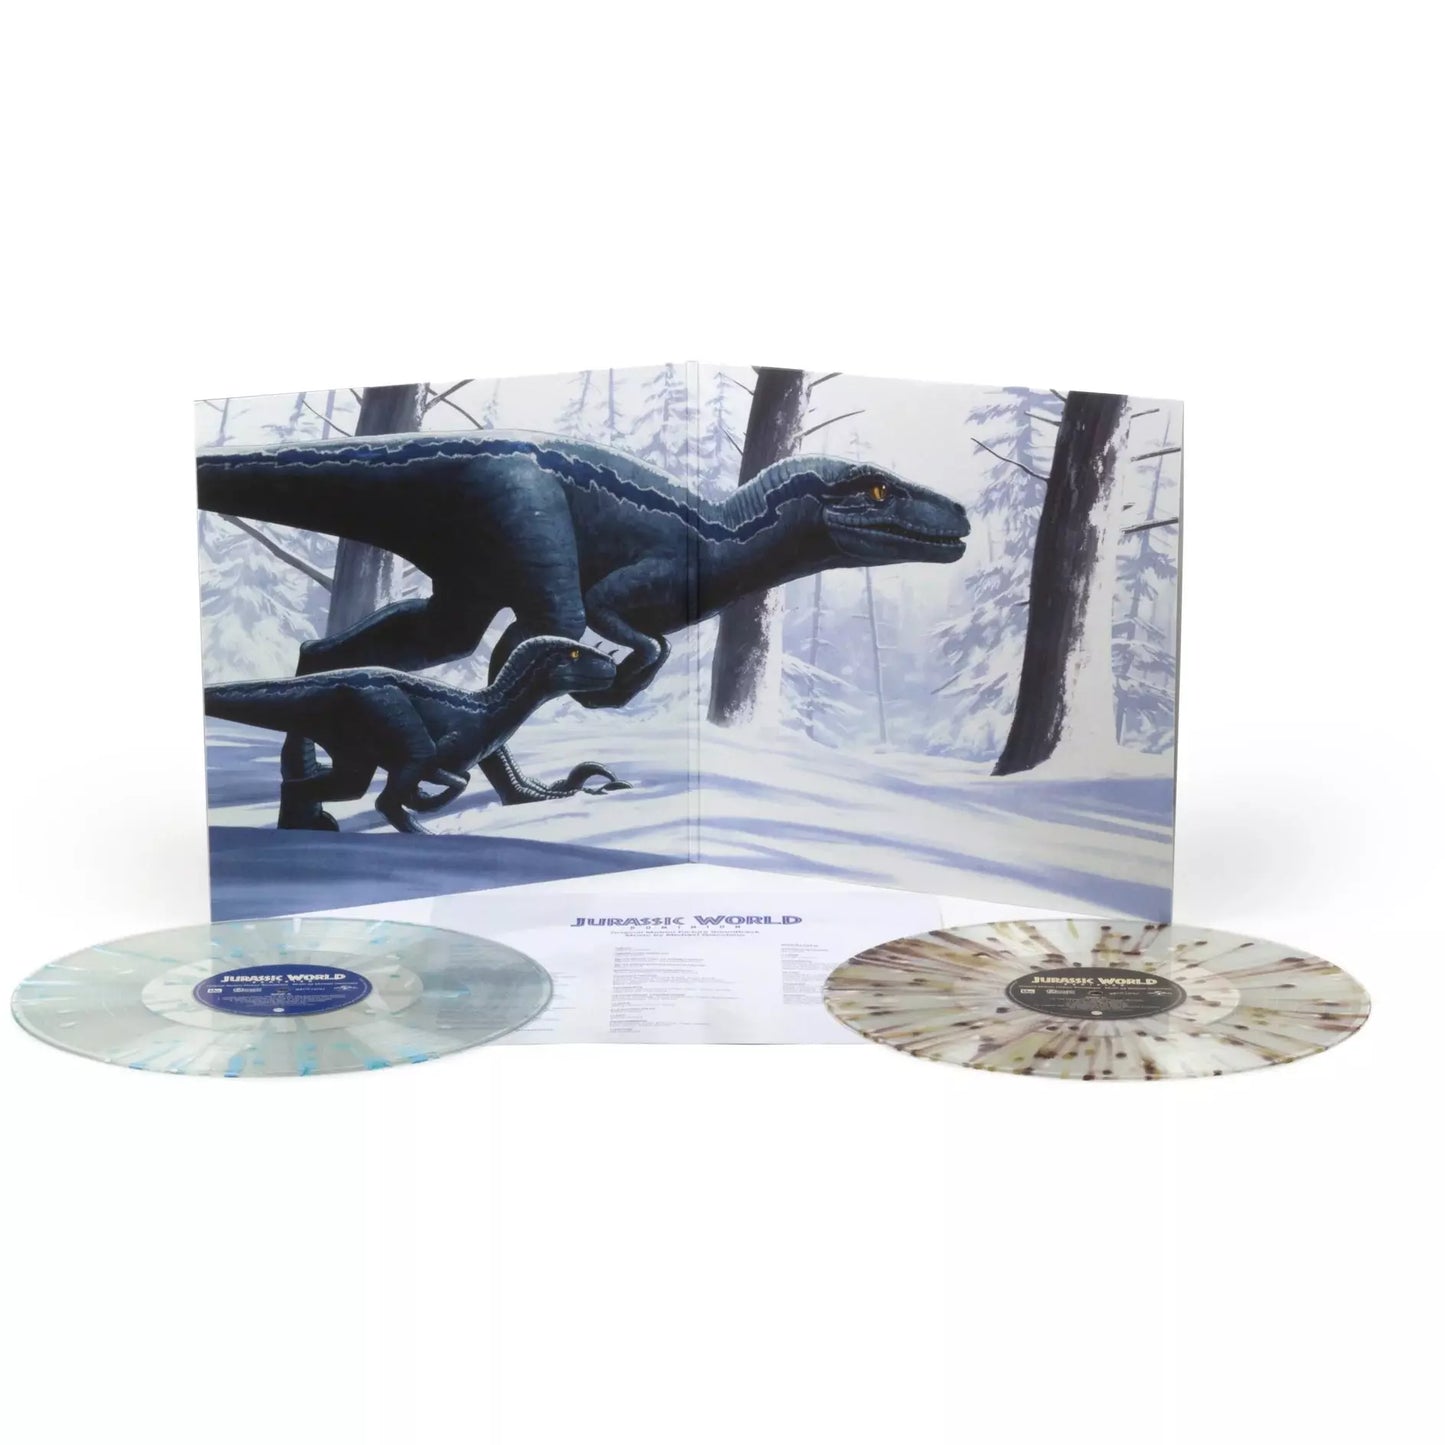 Jurassic World Dominion - Original Motion Picture Soundtrack LP